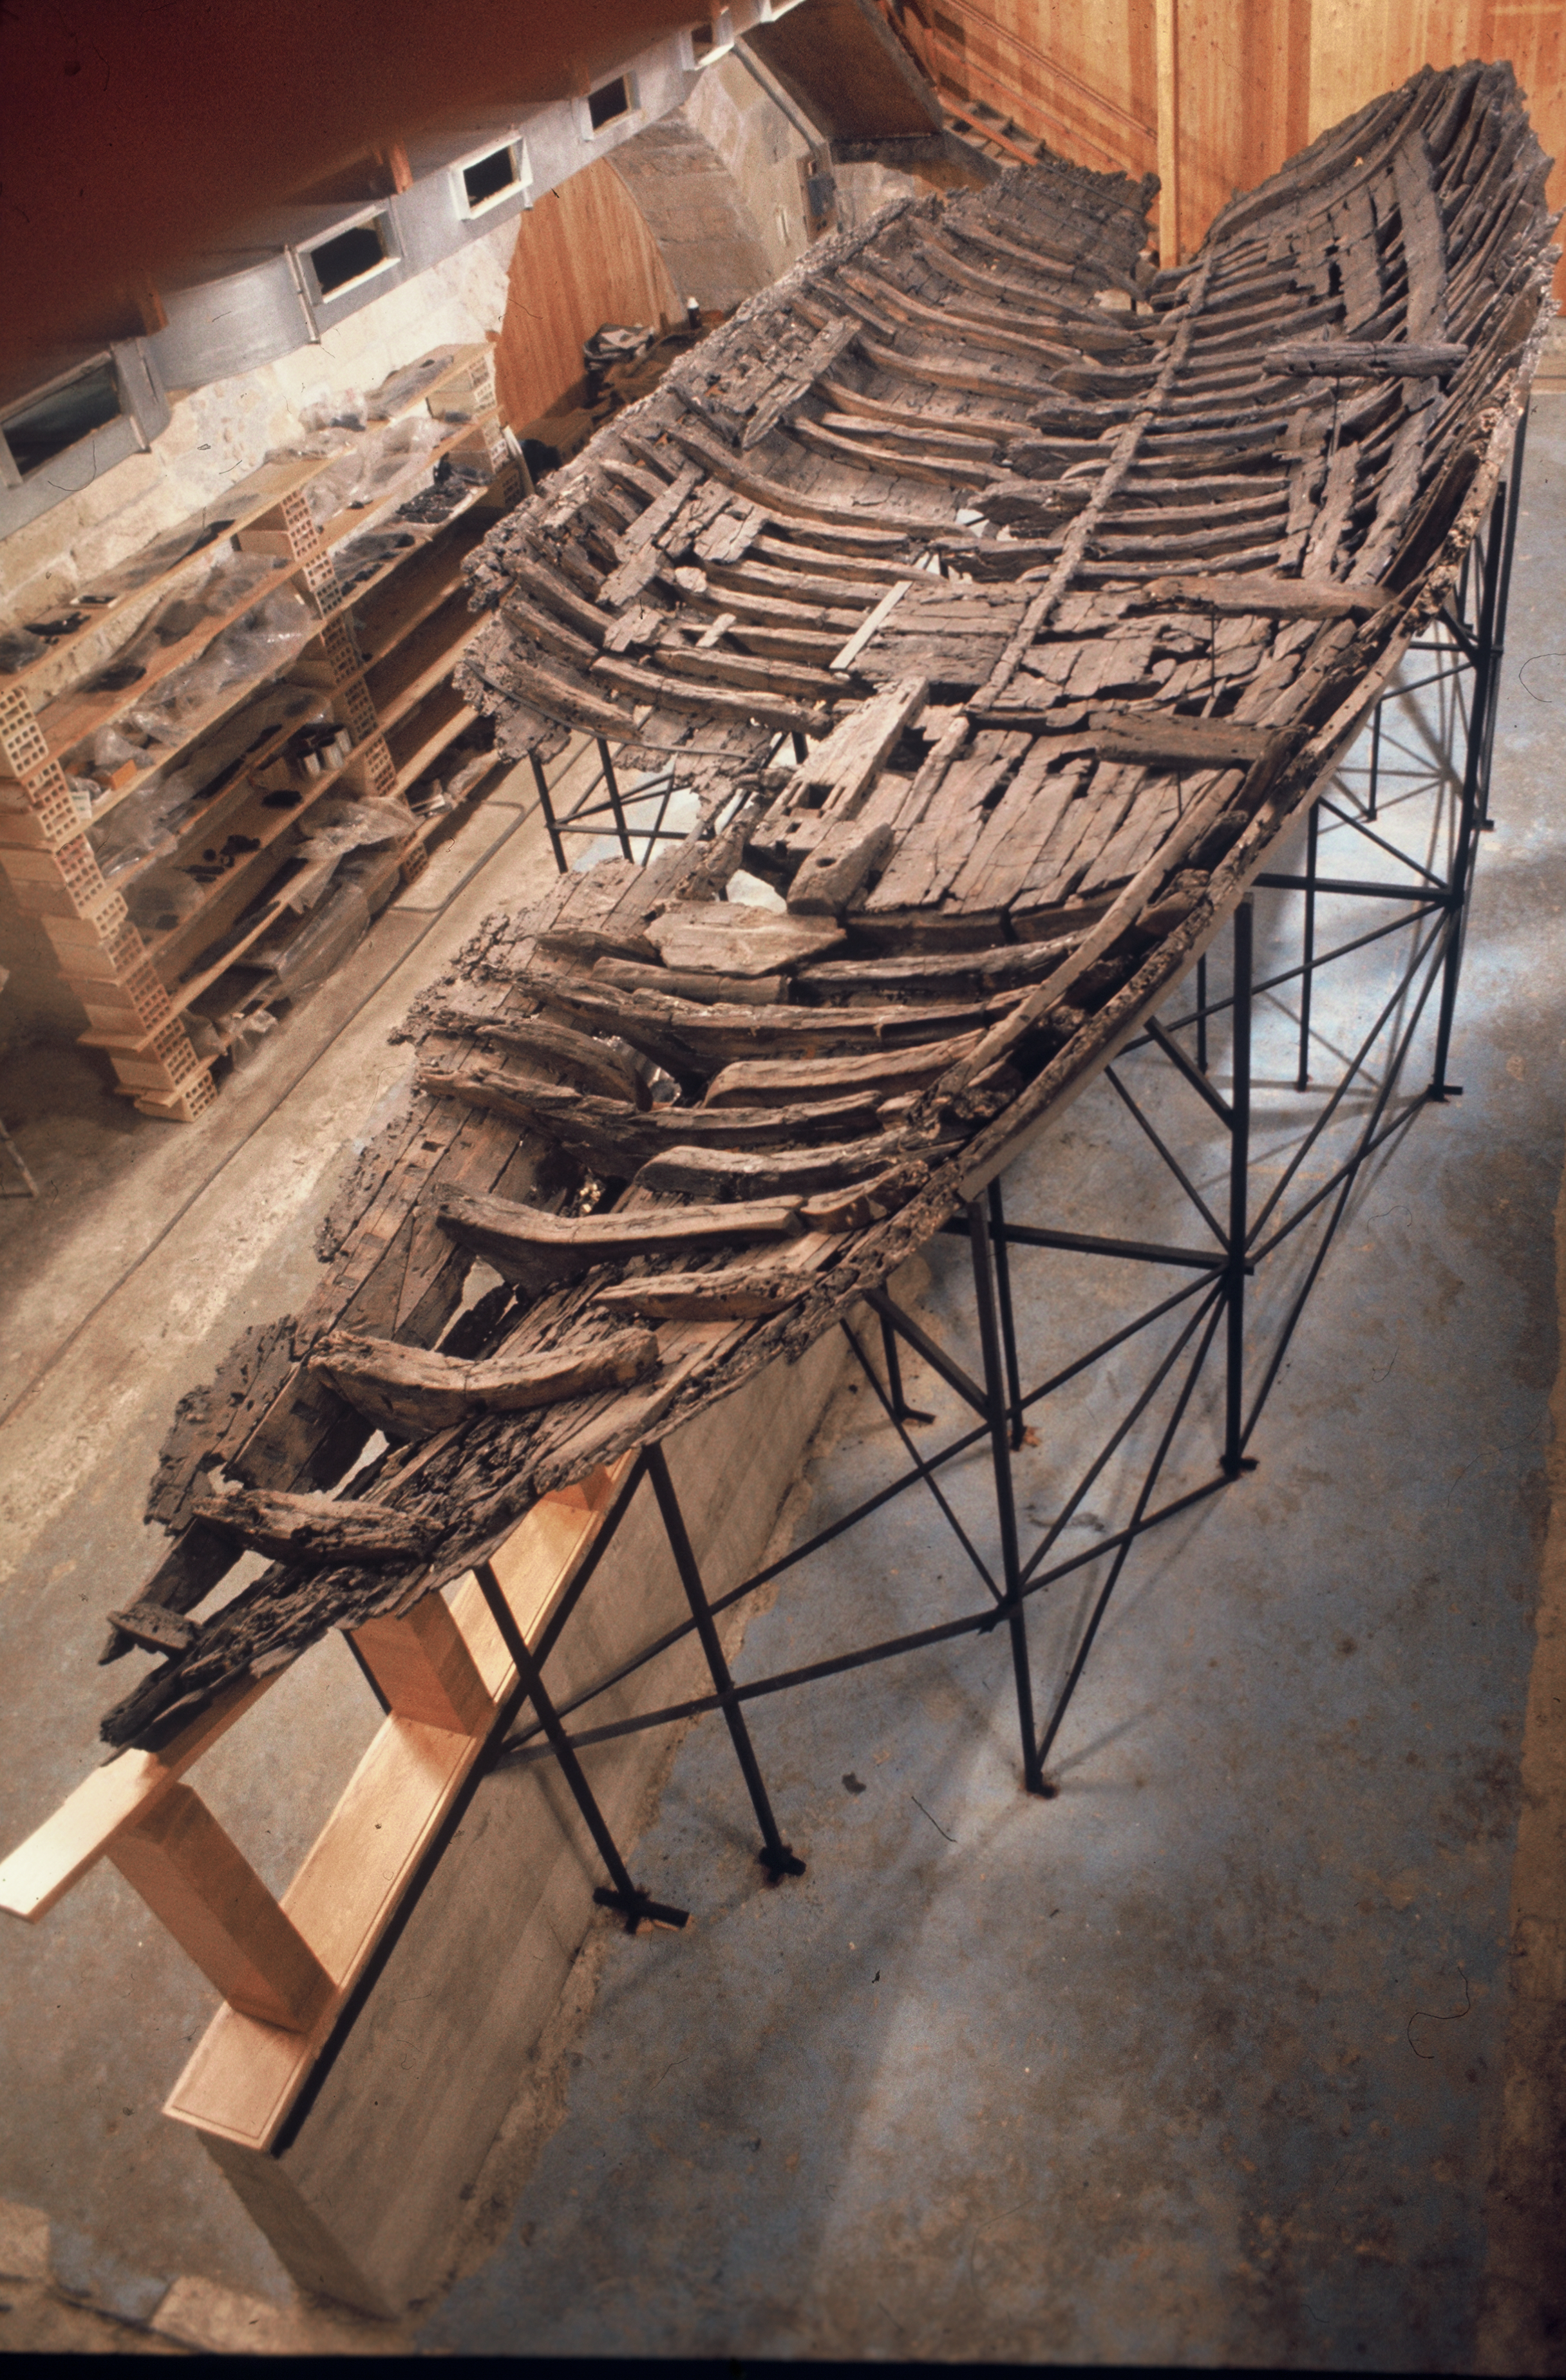 Ξηροί καρποί, κόκαλα και ξύλα βοηθούν το ελληνικό ναυάγιο 2.000 ετών